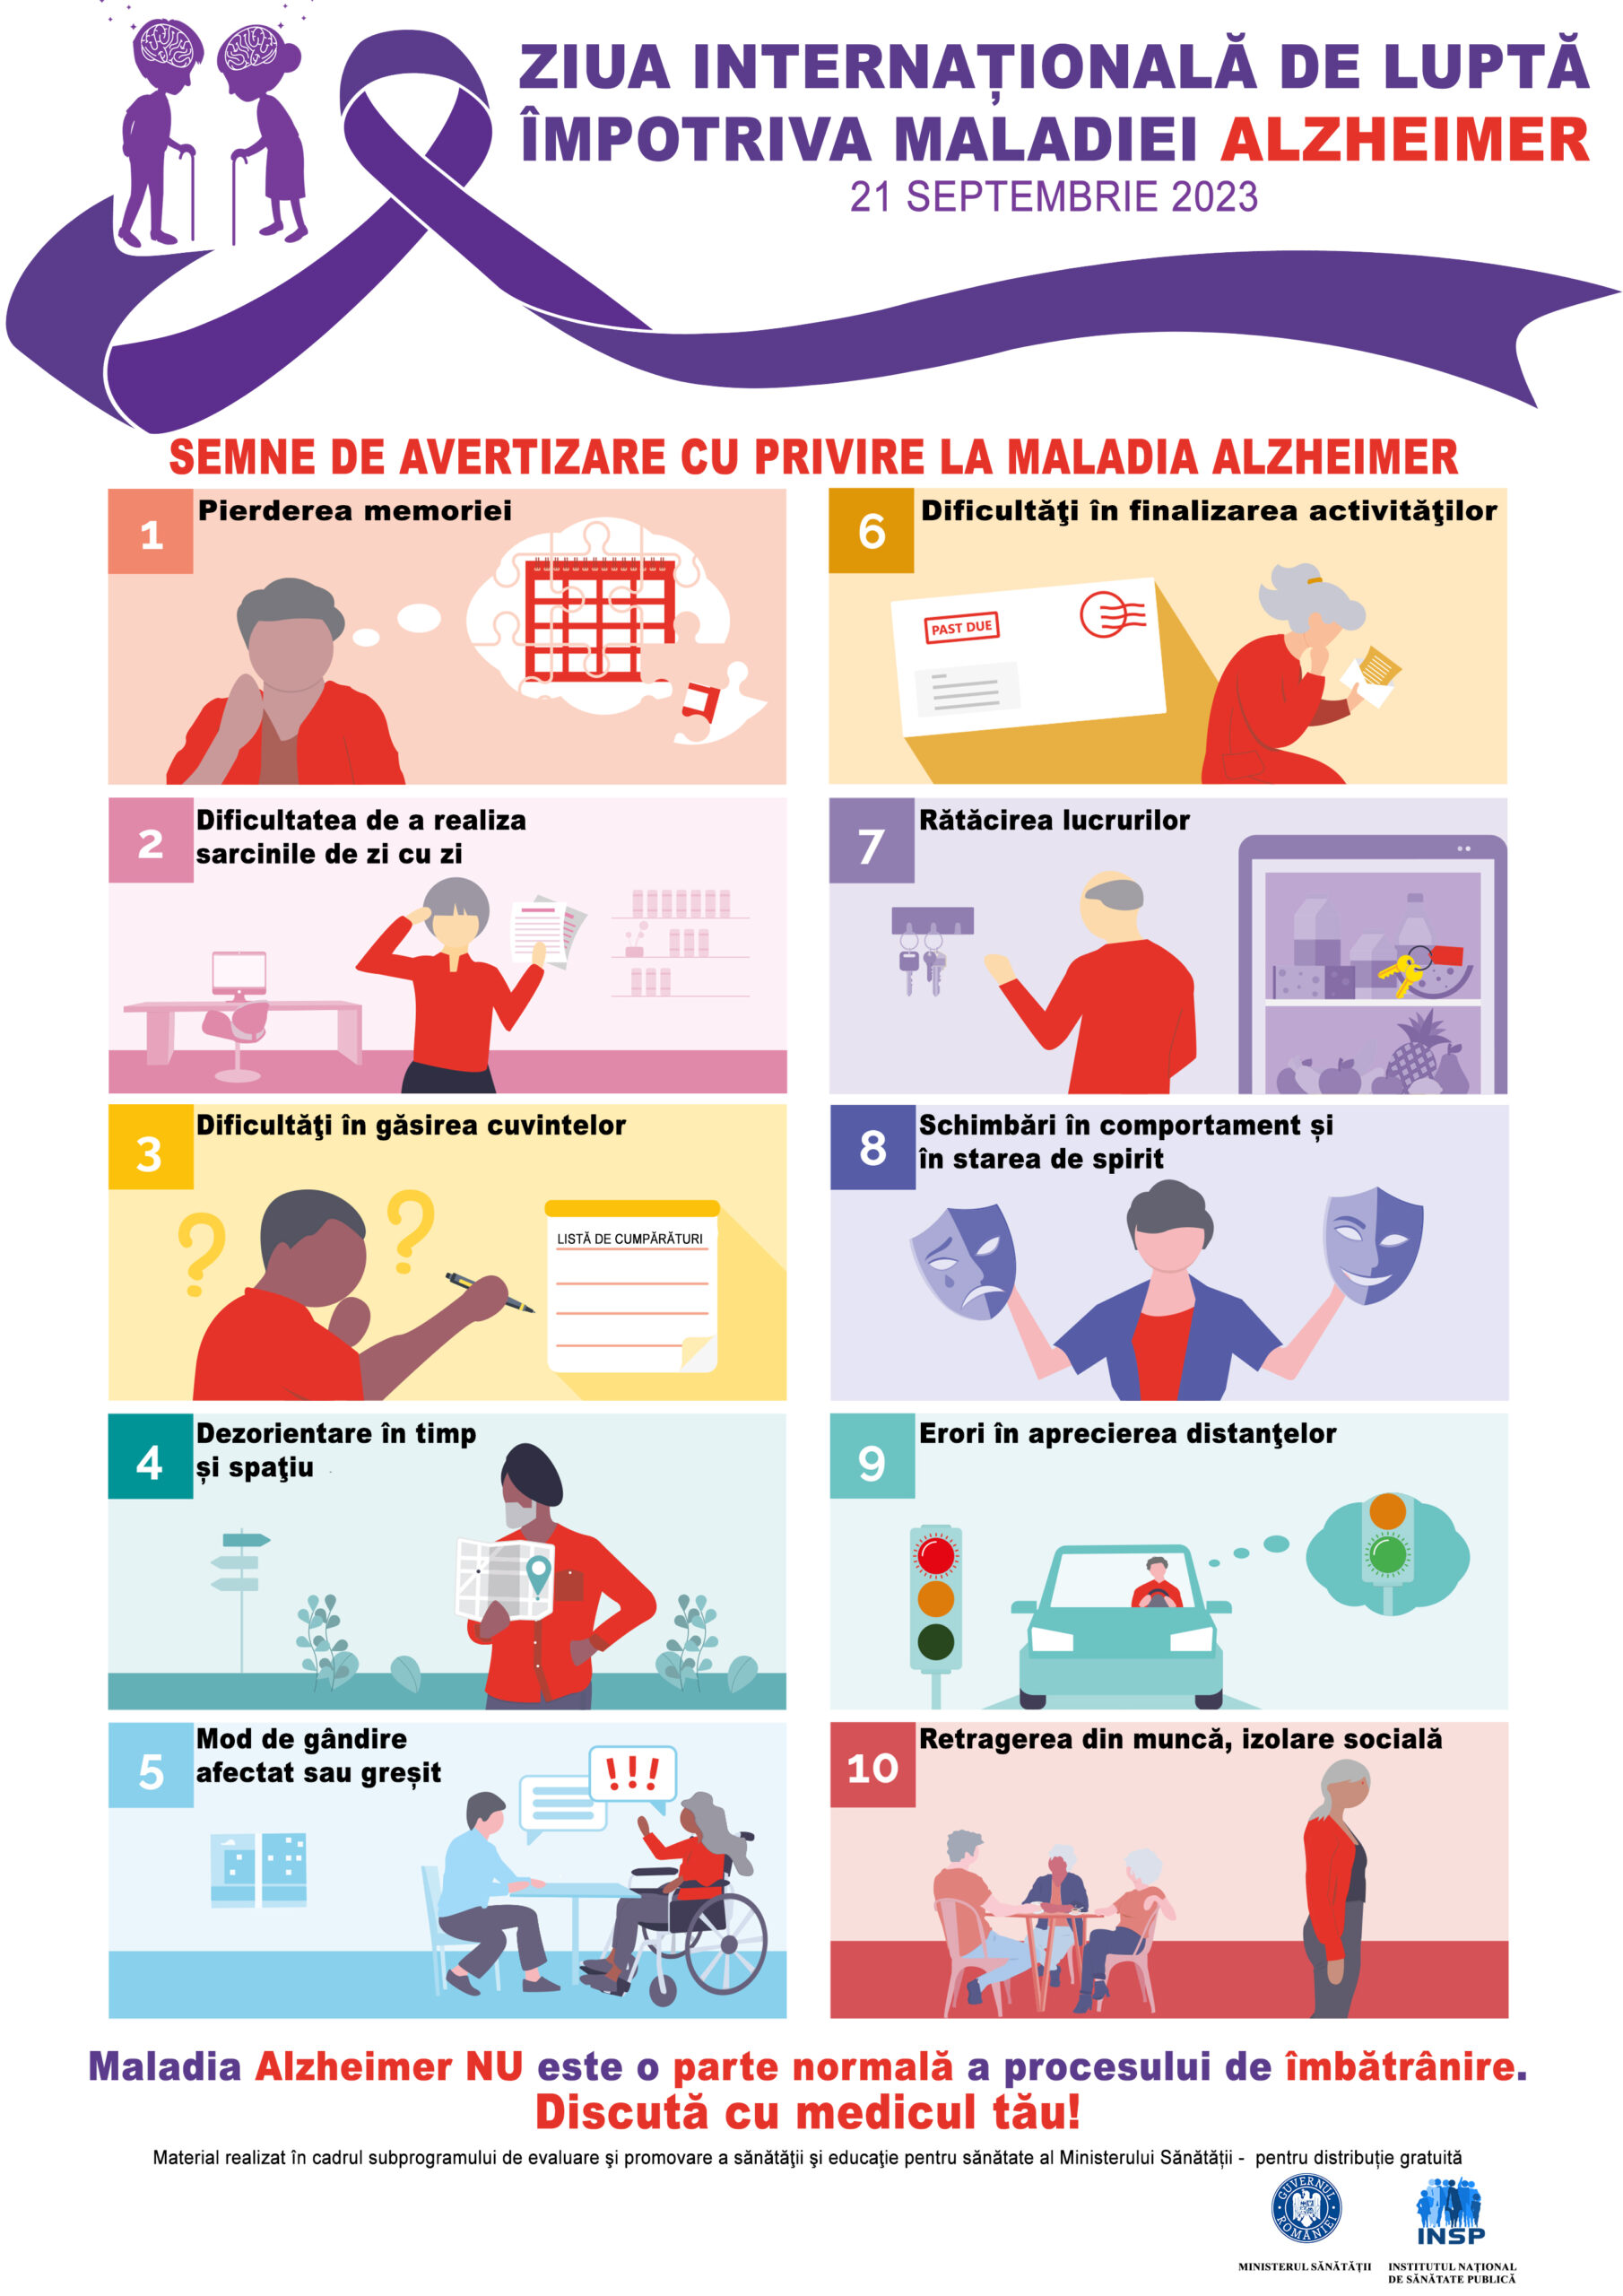 21 septembrie- Ziua Internațională de Luptă împotriva maladiei Alzheimer. „Demența nu este o parte normală a procesului de îmbătrânire! Discută despre aceasta cu medicul tău!”